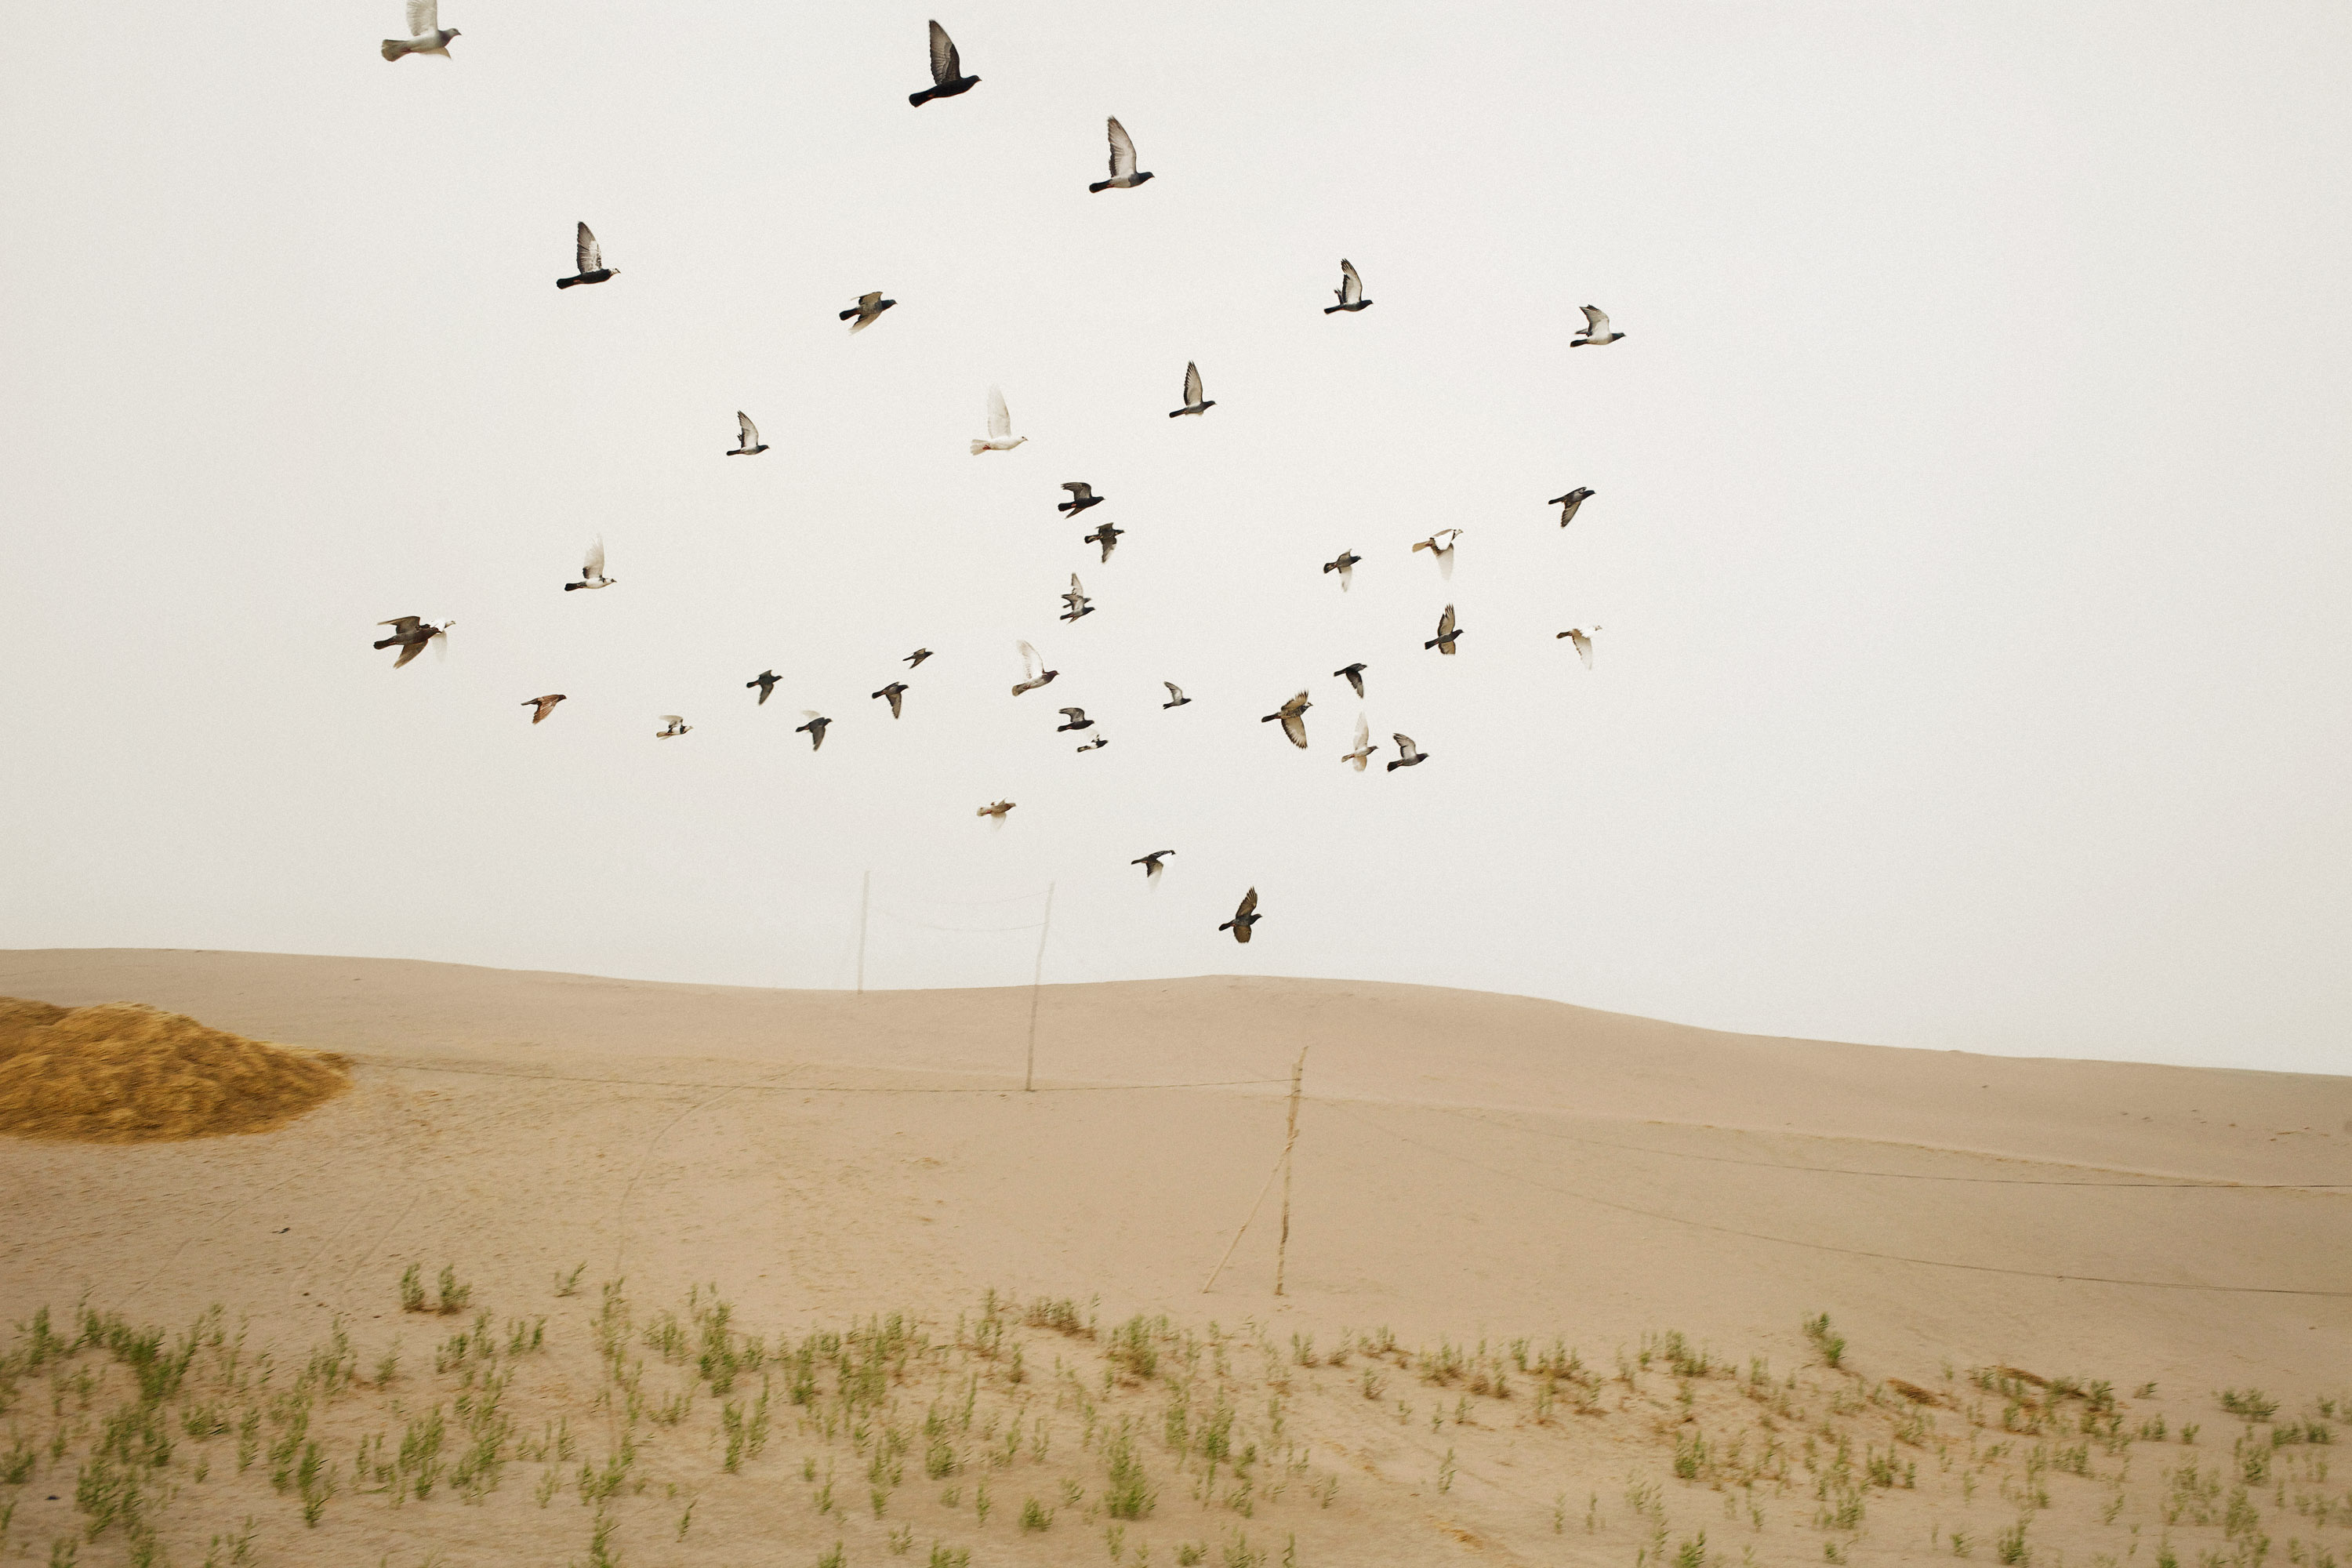 دسته ای از کبوترها در بالای خانه های یک روستای کشاورزی اویغور در حاشیه صحرا در هوا می چرخند.